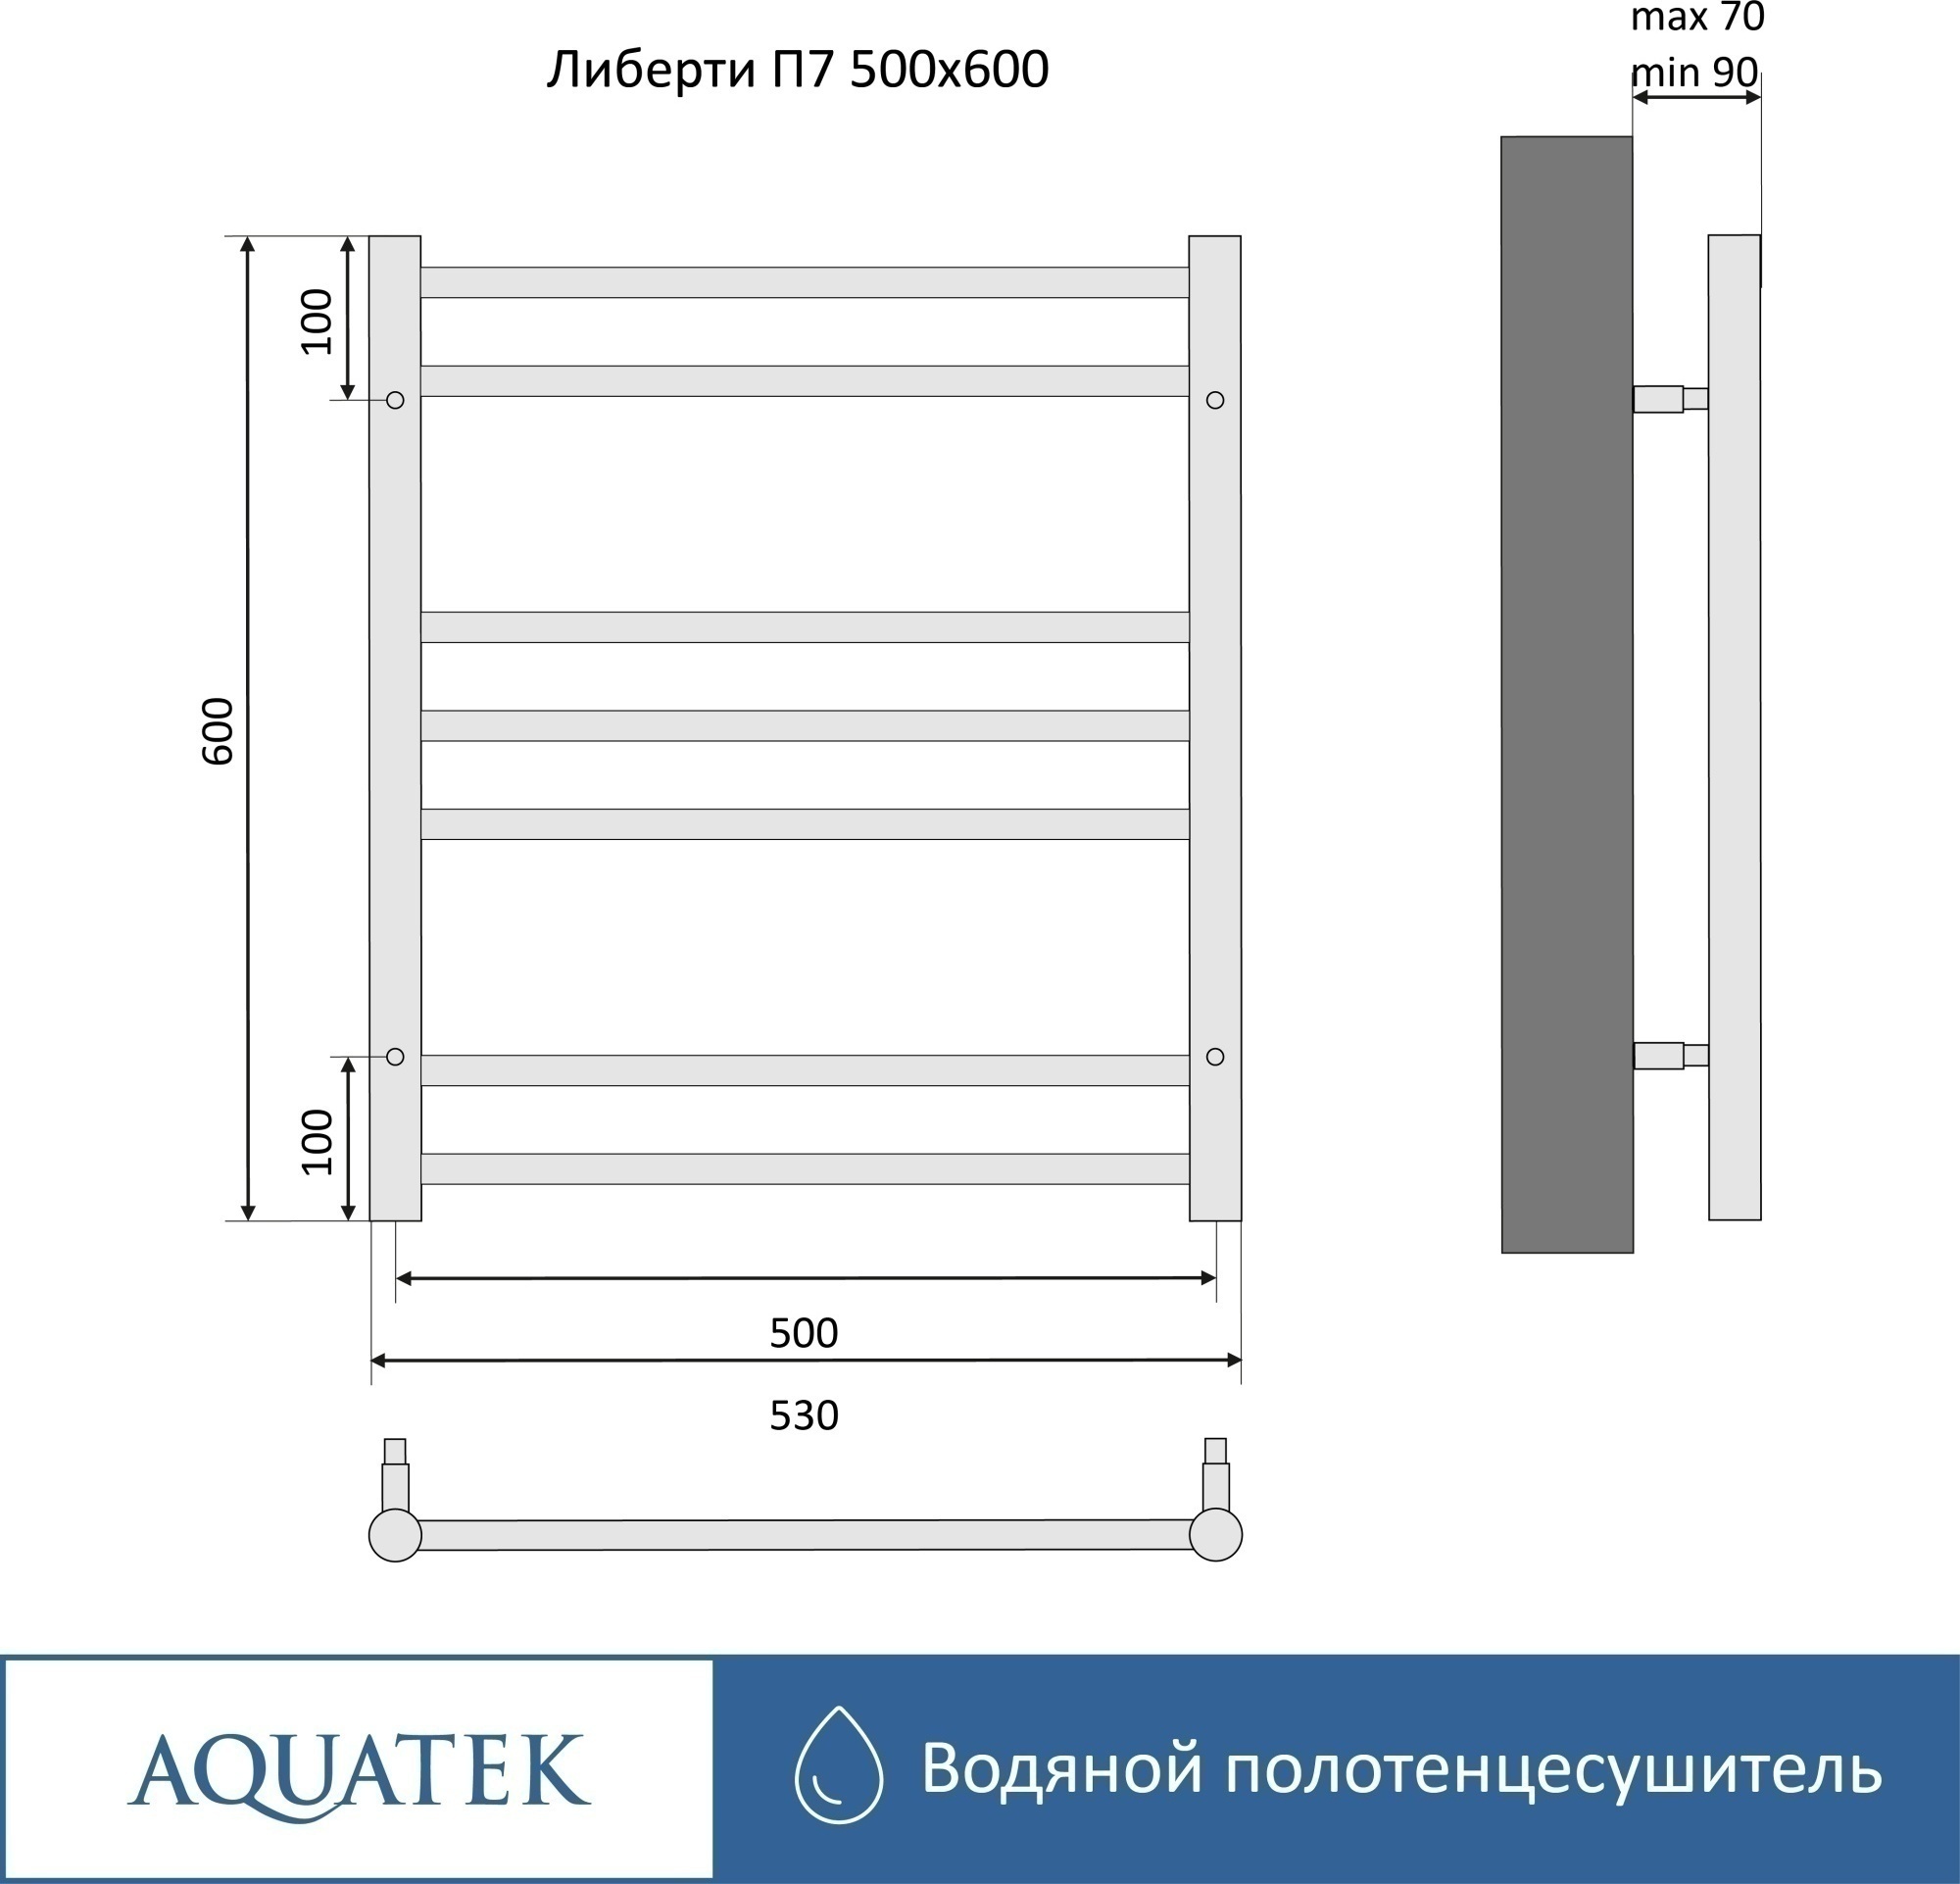 Полотенцесушитель водяной Aquatek Либерти П7 50x60 AQ RR0760BL